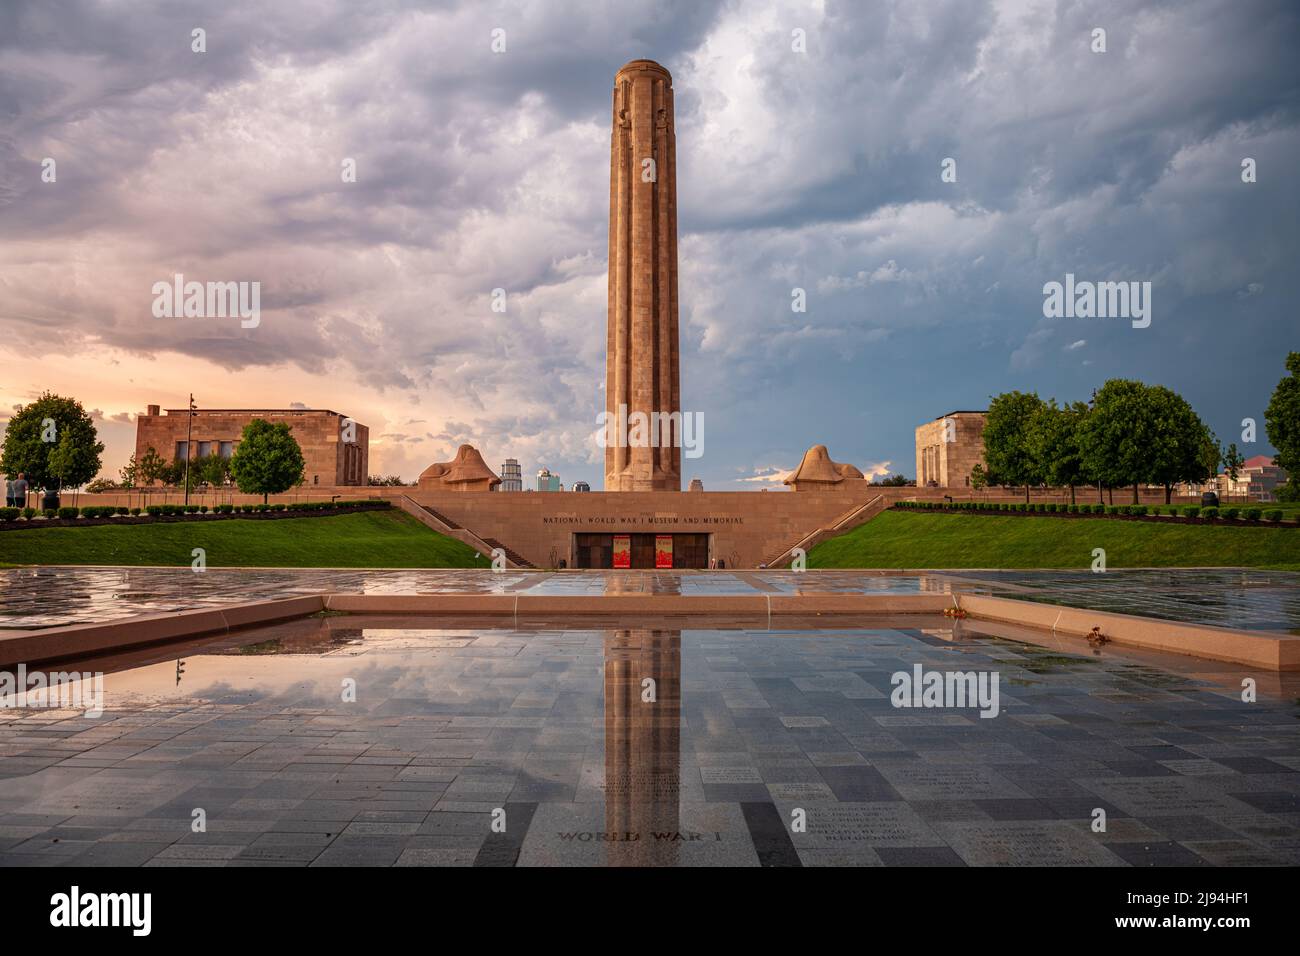 KANSAS CITY, Missouri - Agosto 28, 2018: la Nazionale Museo della Prima Guerra Mondiale e il memoriale di Kansas City. Foto Stock